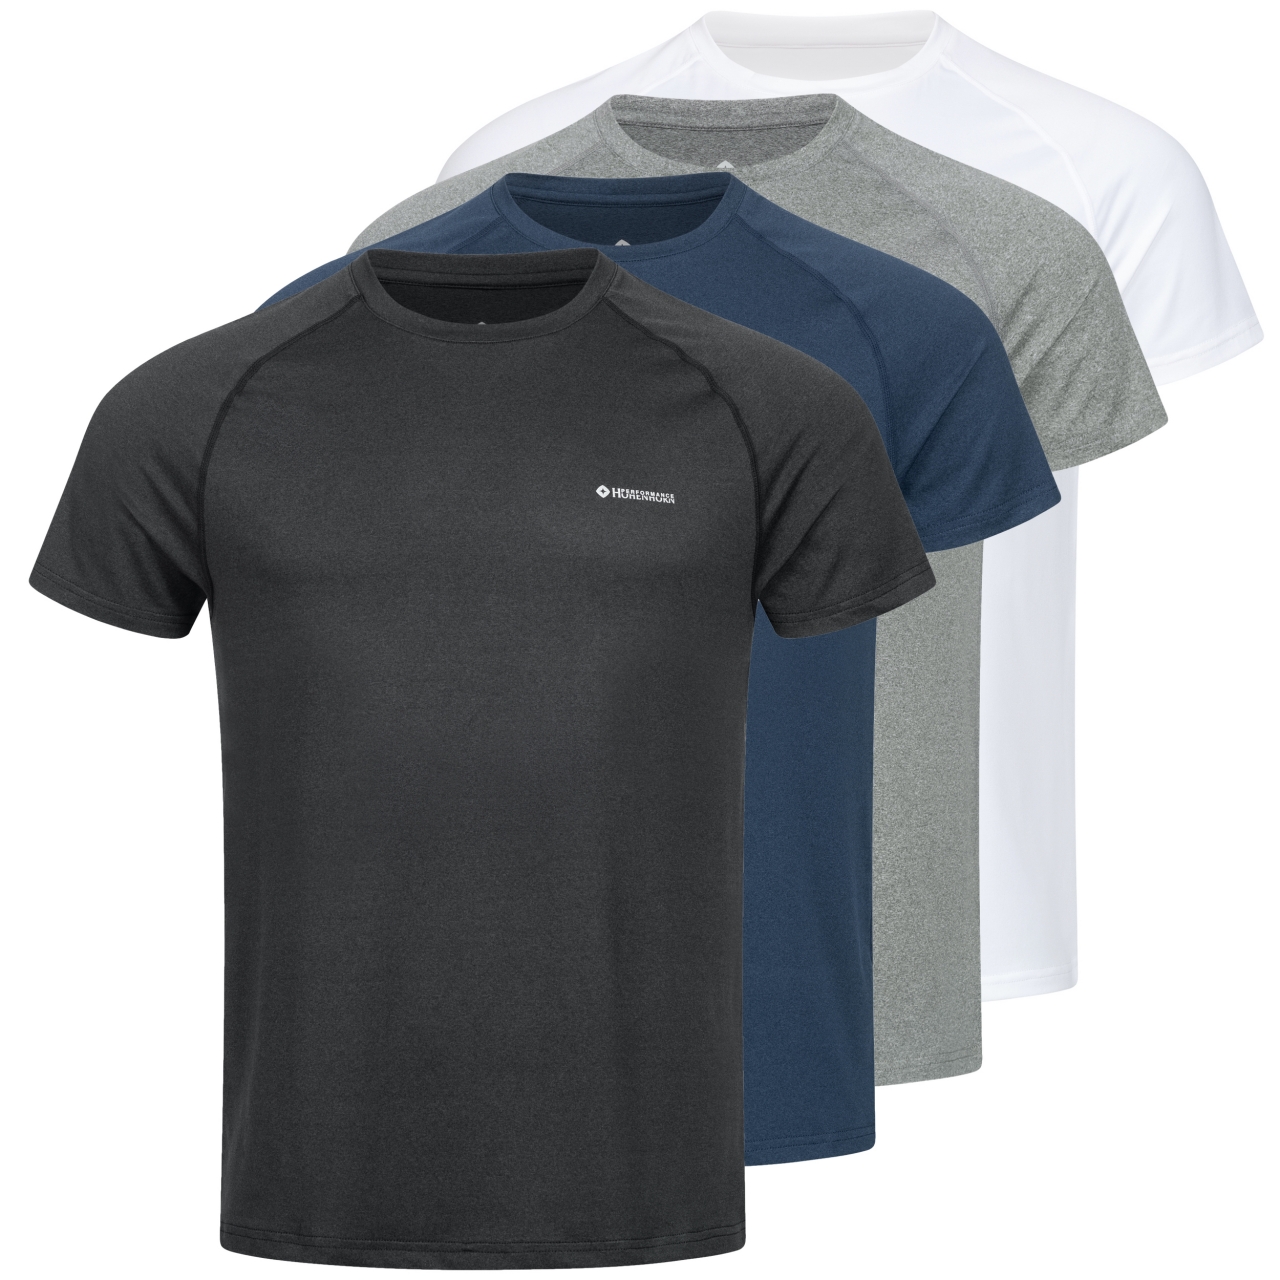 Höhenhorn Kannin Herren T-Shirt Laufshirt Fitness aus Recyceltem Material S Dunkelgrau von Höhenhorn